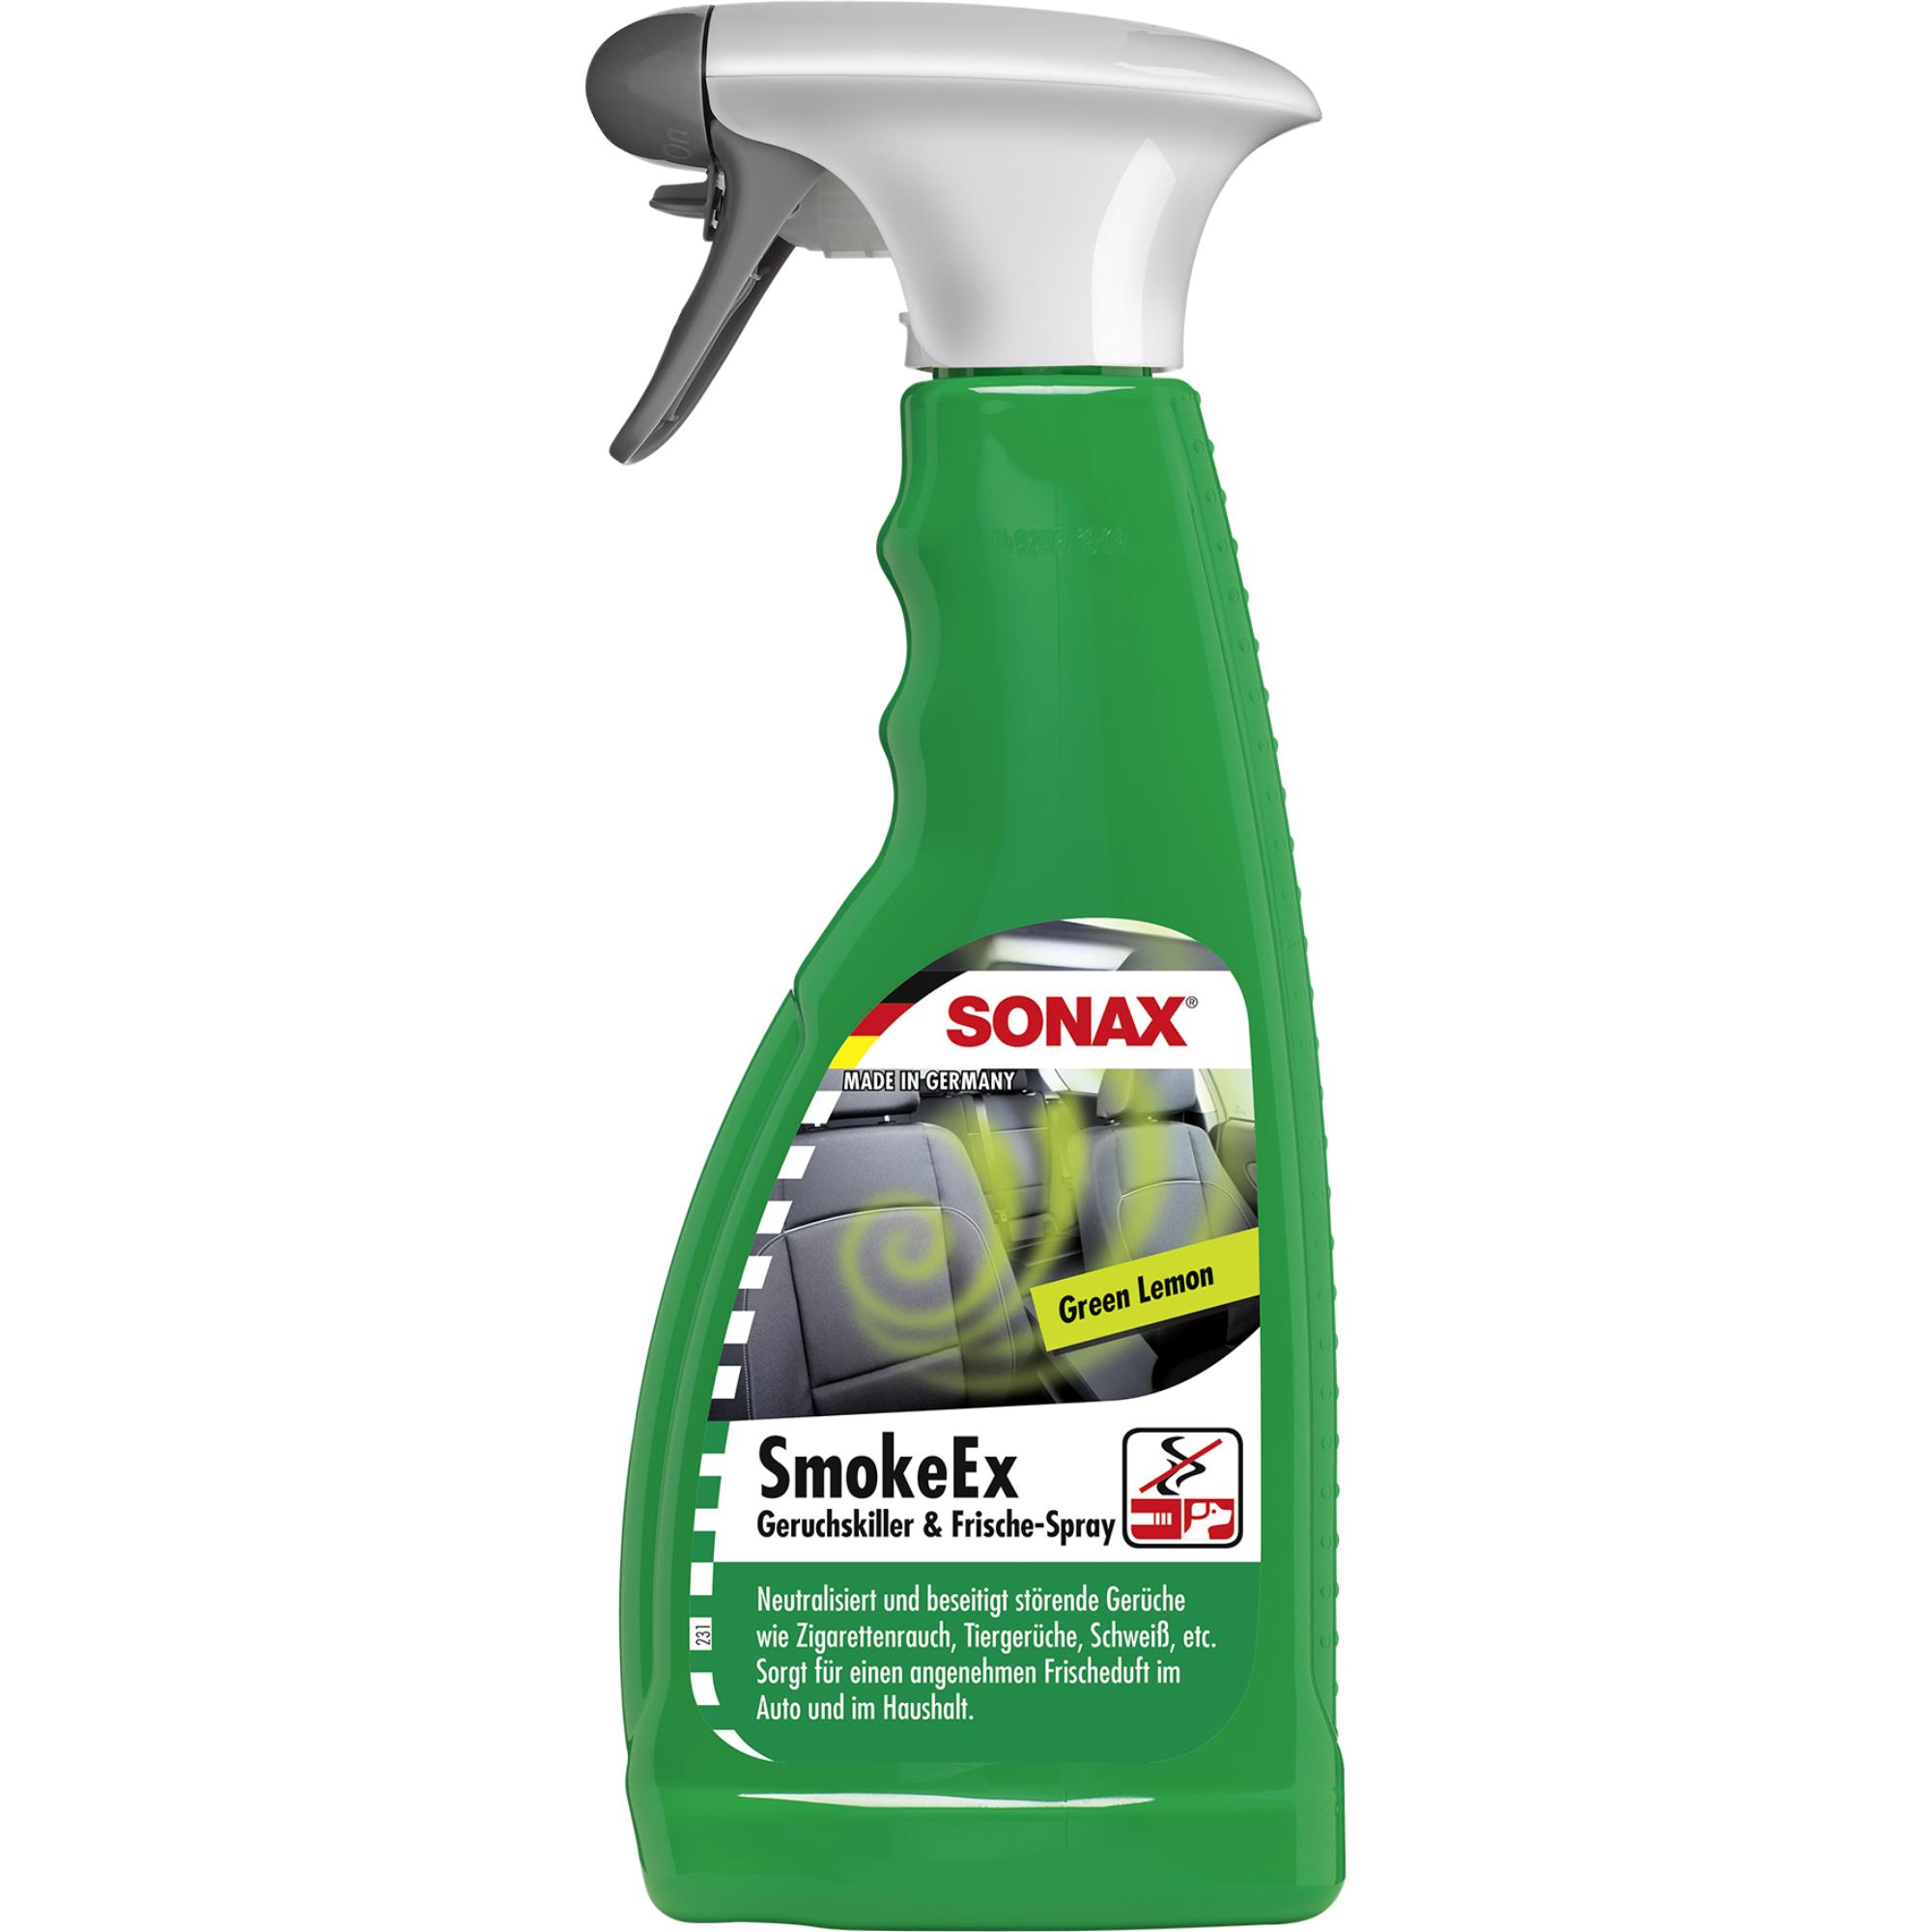 SONAX 02902410 SmokeEx Geruchskiller & Frische-Spray Green Lemon 500ml